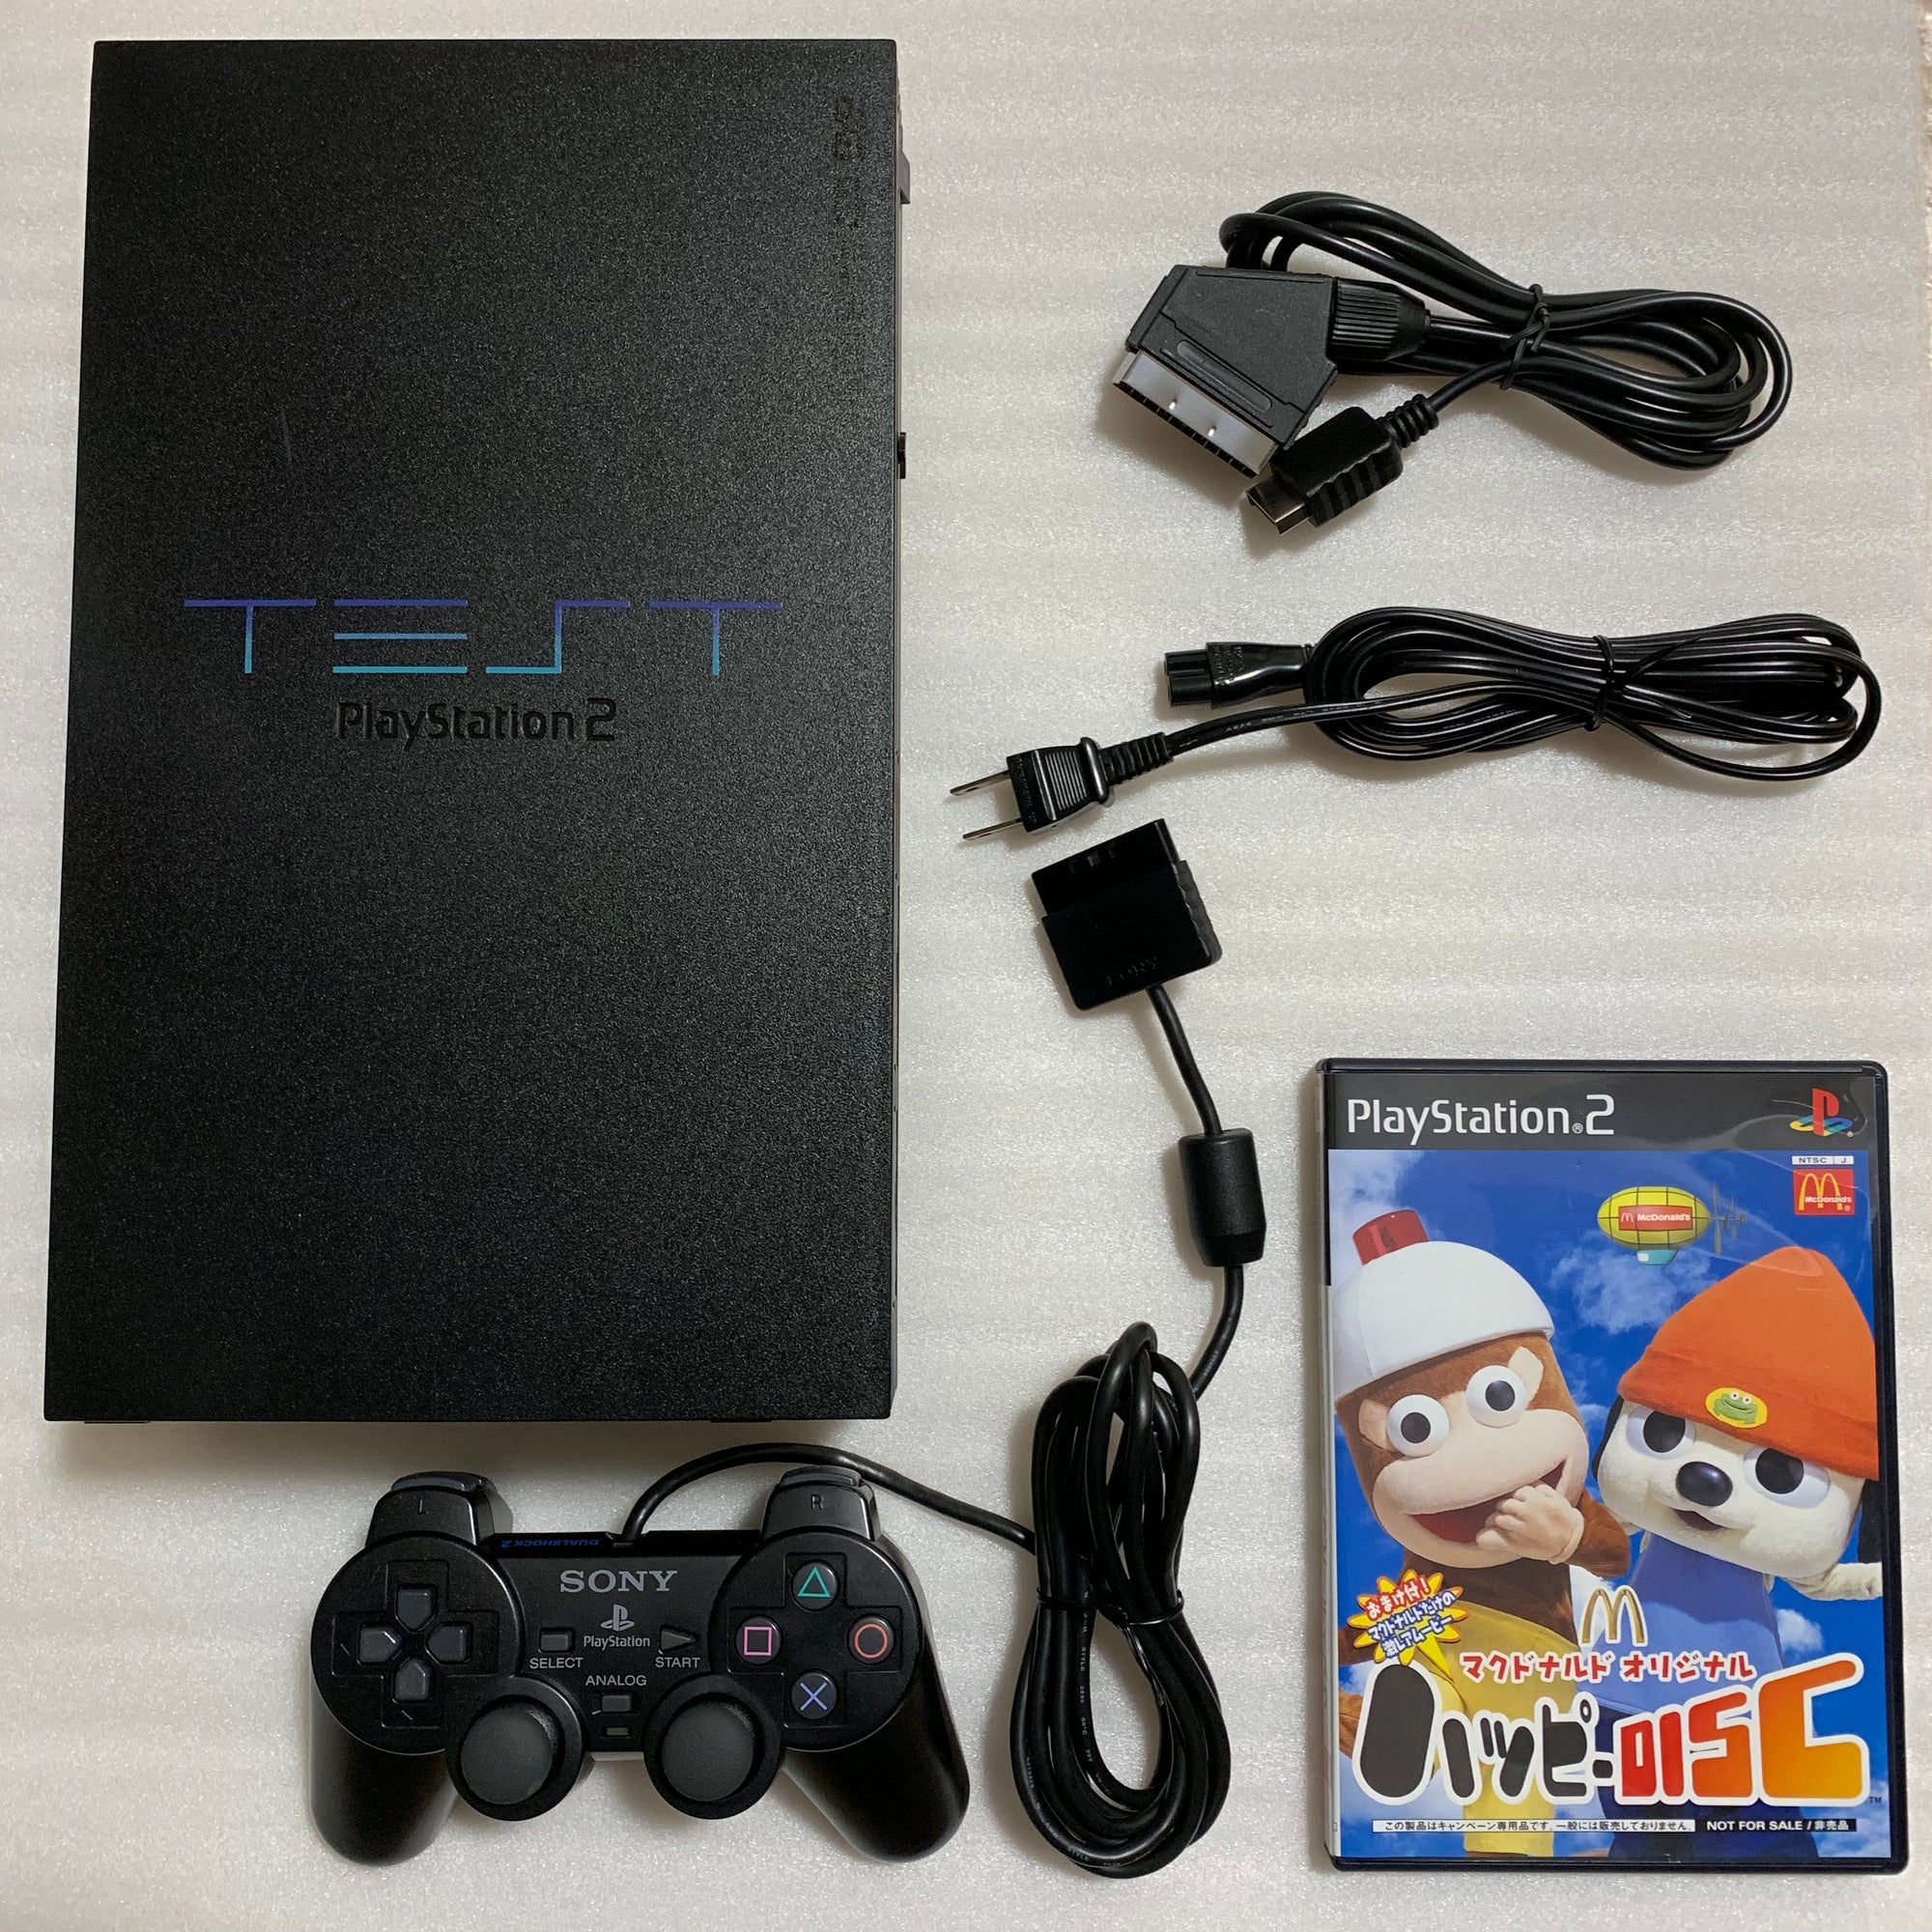 TEST PS2 (Debugging Station DTL-H10000) set